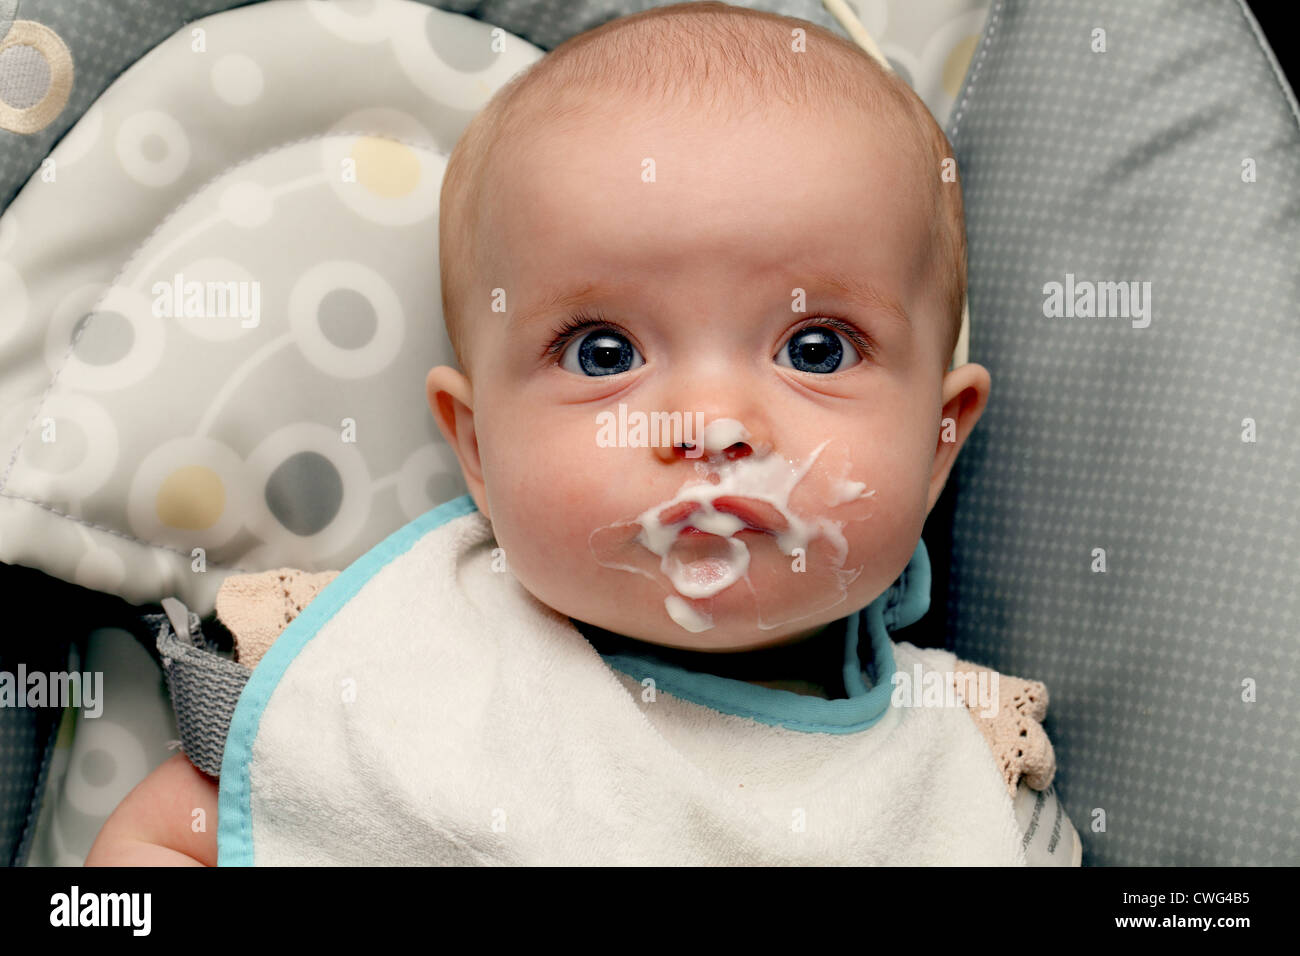 Une petite fille de 6 mois avec sa bouche ronde alimentaire Banque D'Images